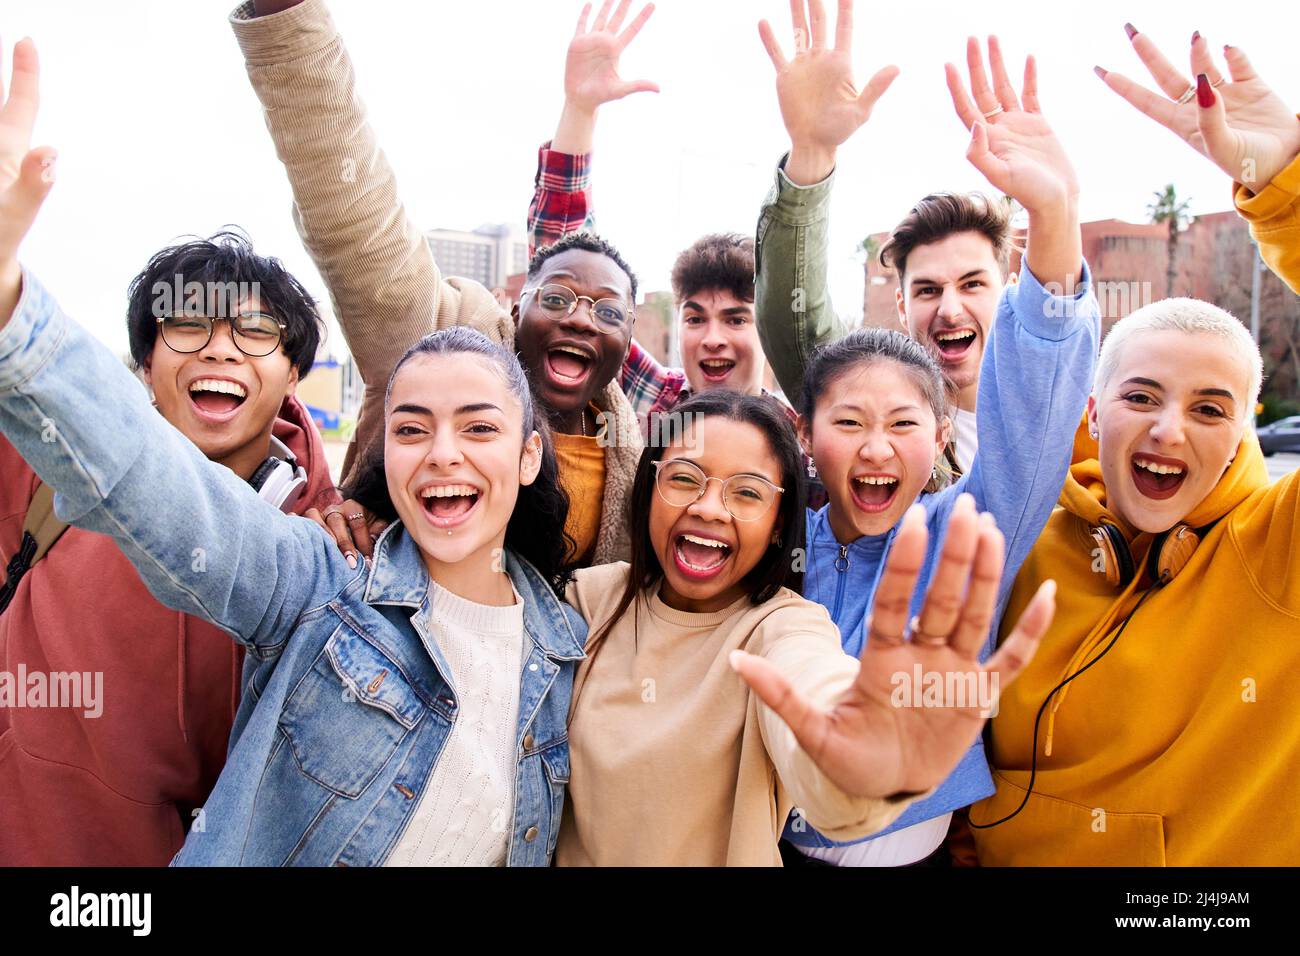 Grand groupe de jeunes amis joyeux et motivés prenant le portrait de selfie. Des gens heureux qui regardent l'appareil photo souriant. Concept de communauté Banque D'Images